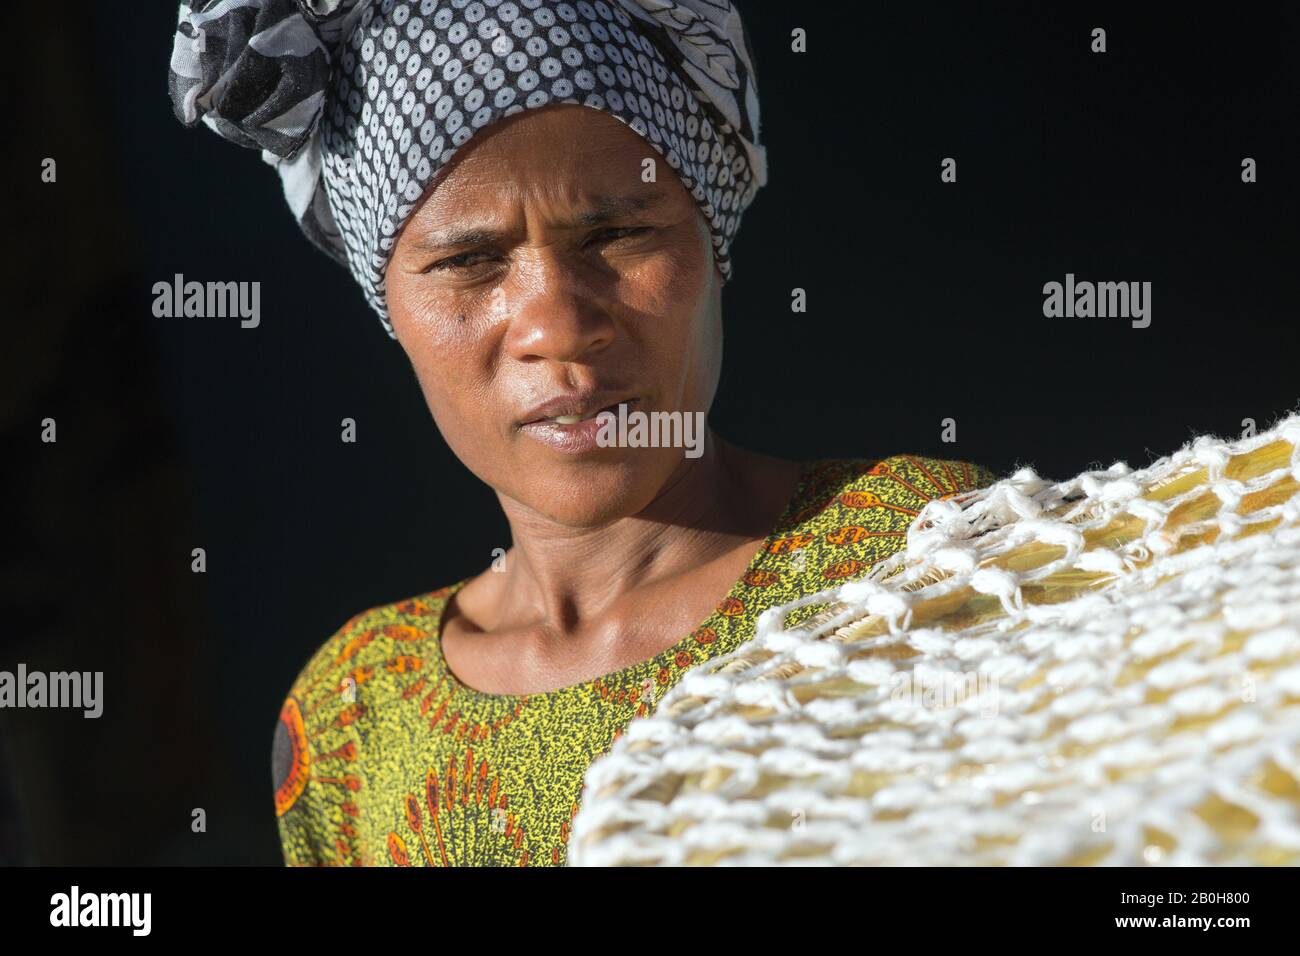 07.11.2019, Adama, Oromiyaa, Etiopia - Produzione della pasta locale Injira. Confezionato sotto una lamina, il pane viene portato al cliente. Wo Foto Stock